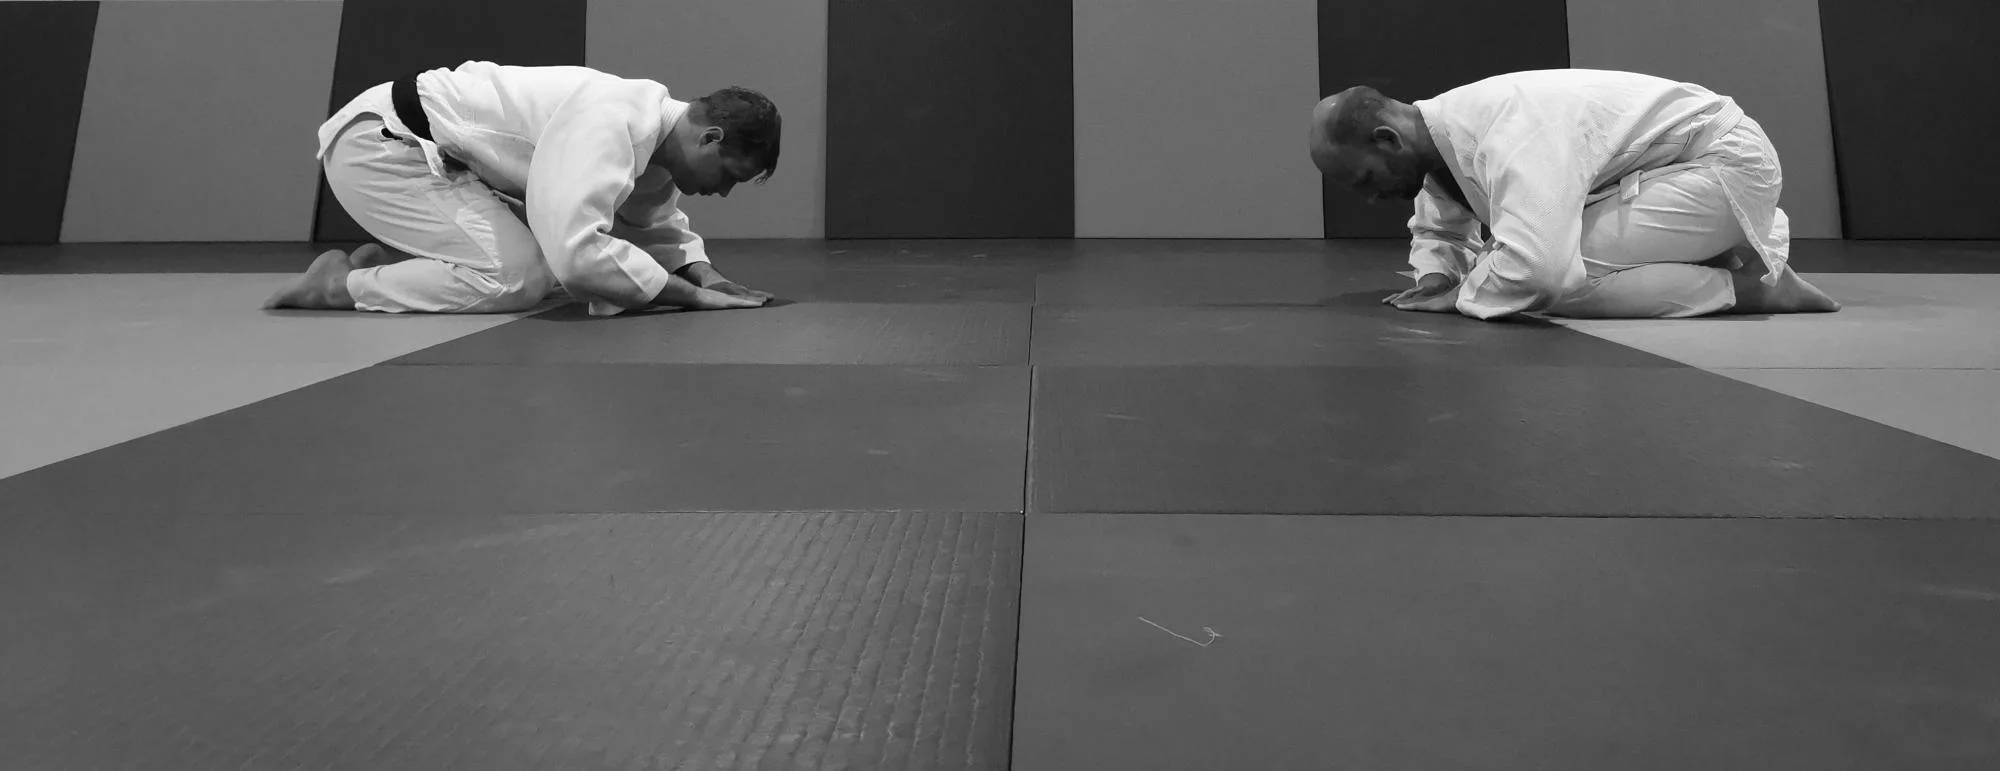 Reigi en Reishiki gedragscode en etiquette bij Judo